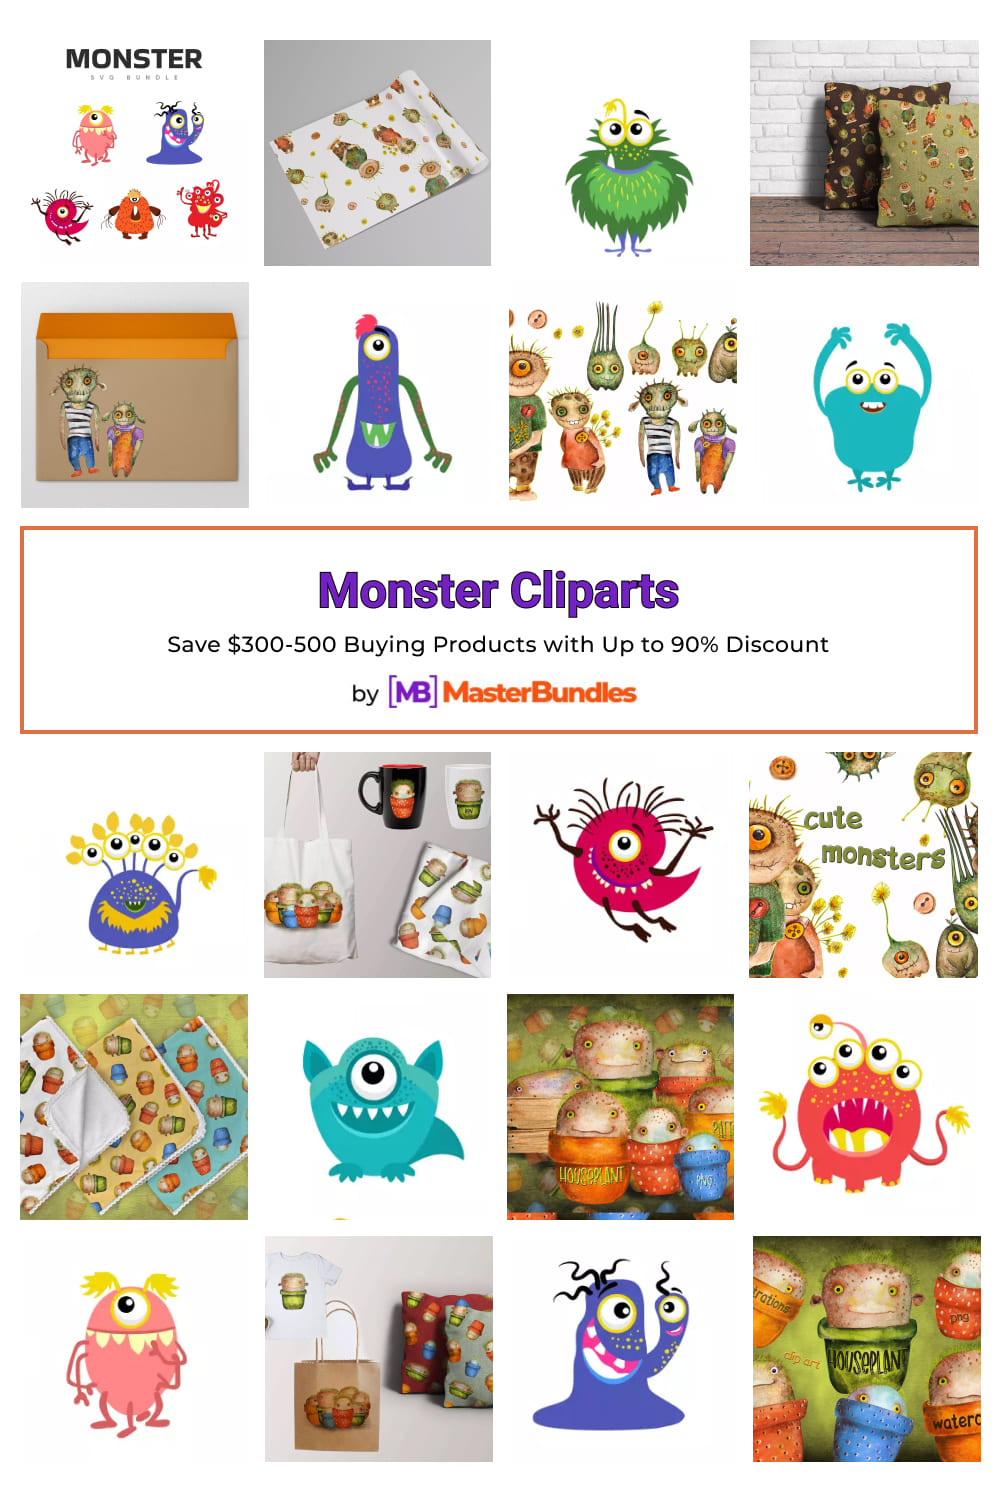 Monster Cliparts for Pinterest.